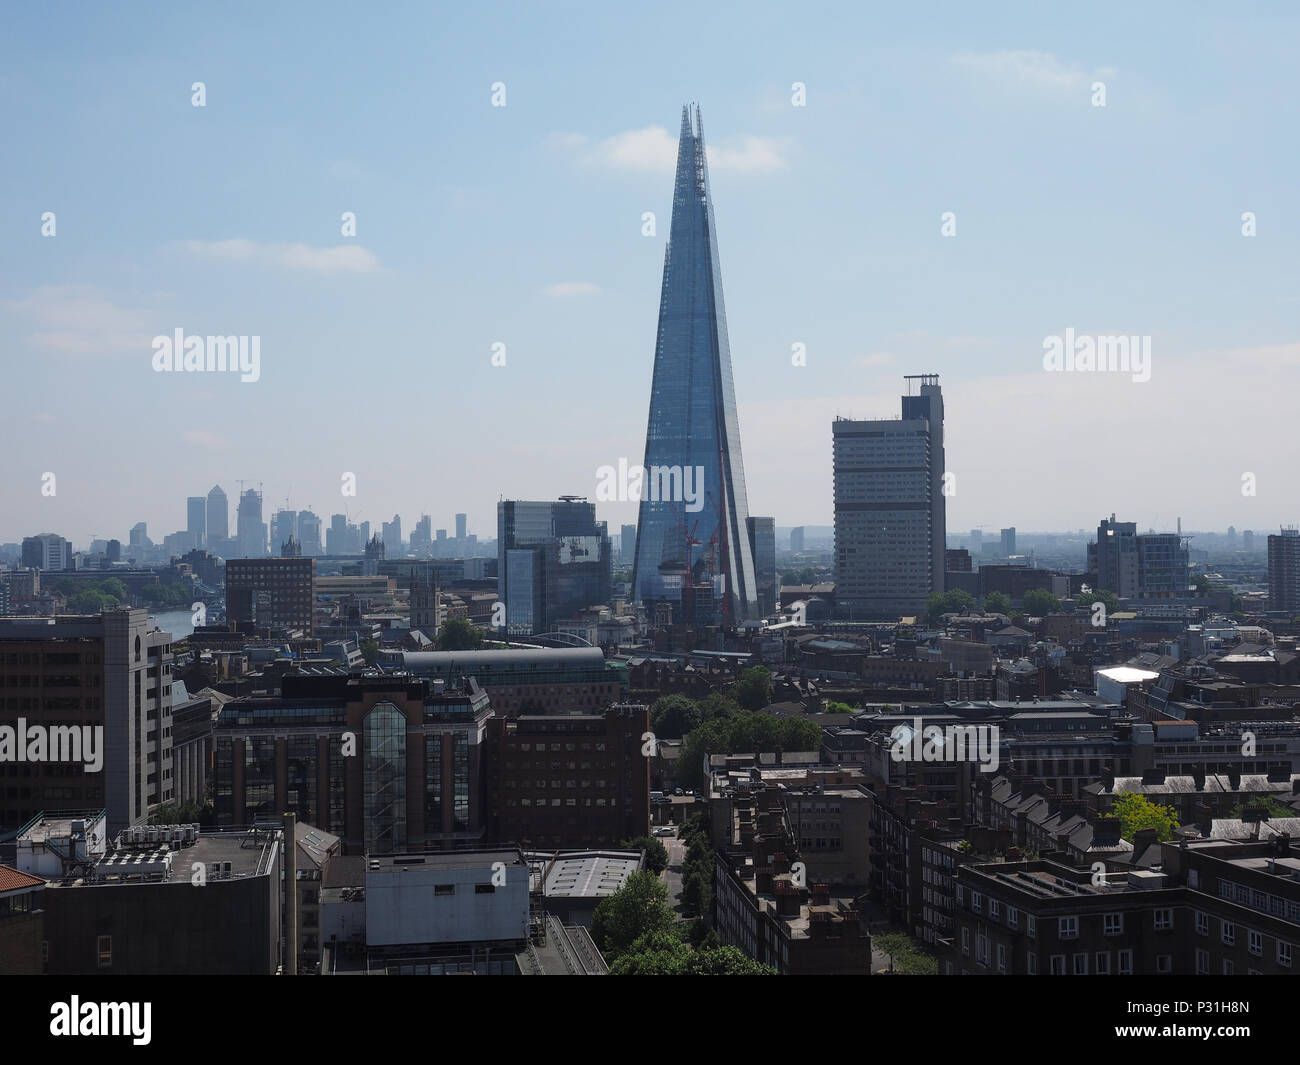 Londres, UK - CIRCA Juin 2018 : Le gratte-ciel Shard conçu par l'architecte italien Renzo Piano, c'est le plus haut bâtiment de la ville Banque D'Images